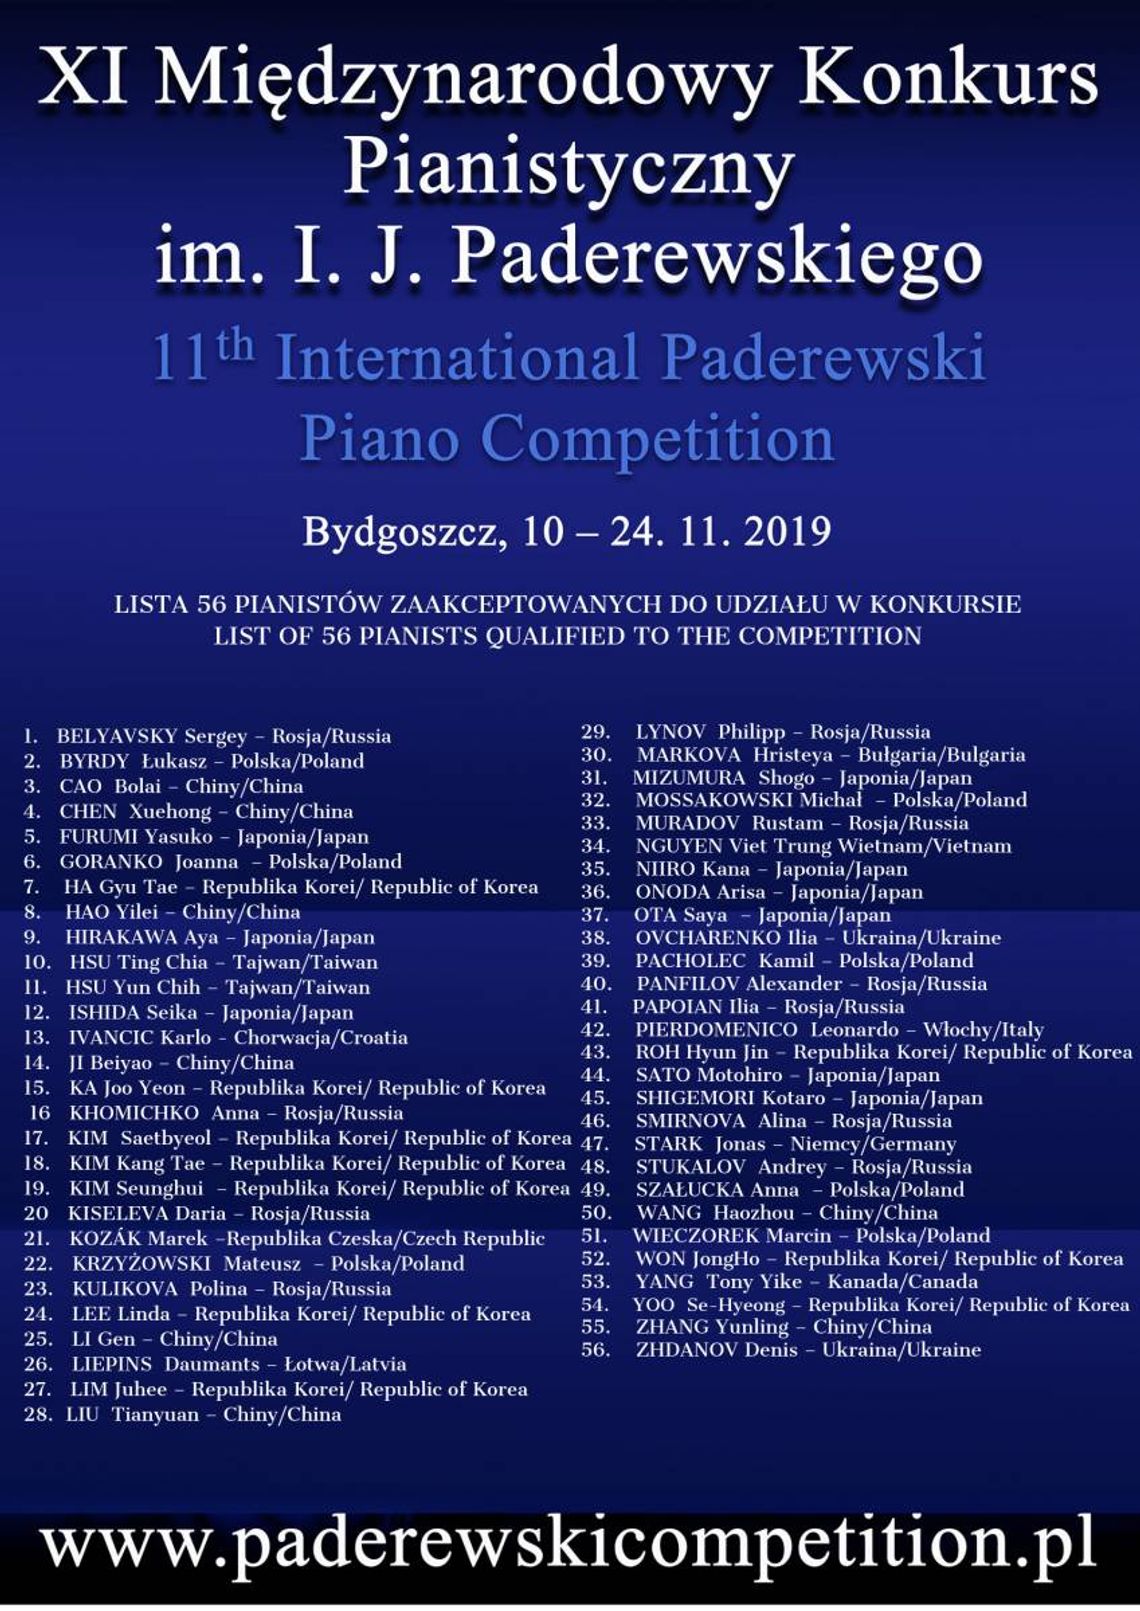 XI Międzynarodowy Konkurs Pianistyczny im. I. J. Paderewskiego